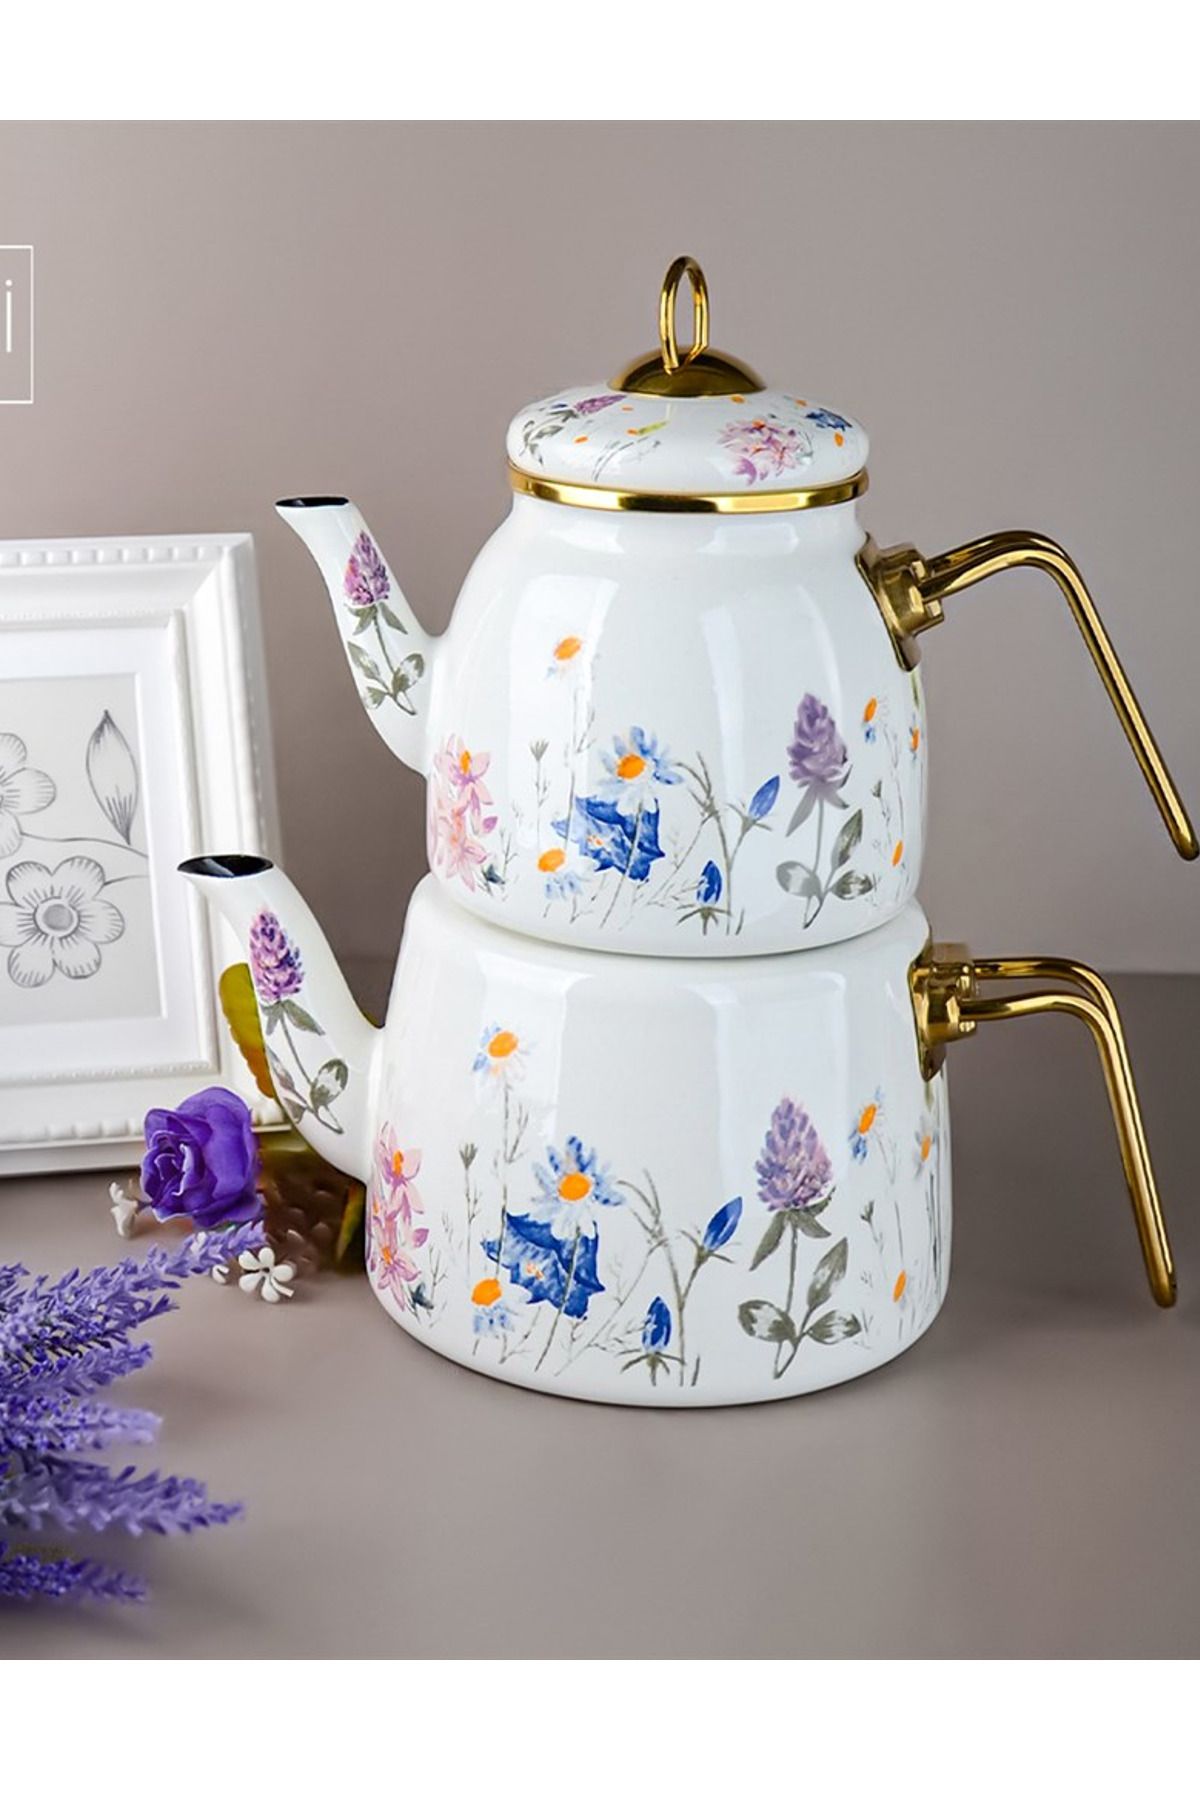 PORLİSTAN Çiçekli Emaye Çaydanlık Takımı,bahar Desen Çiçekli Gold Saplı Emaye Çaydanlık